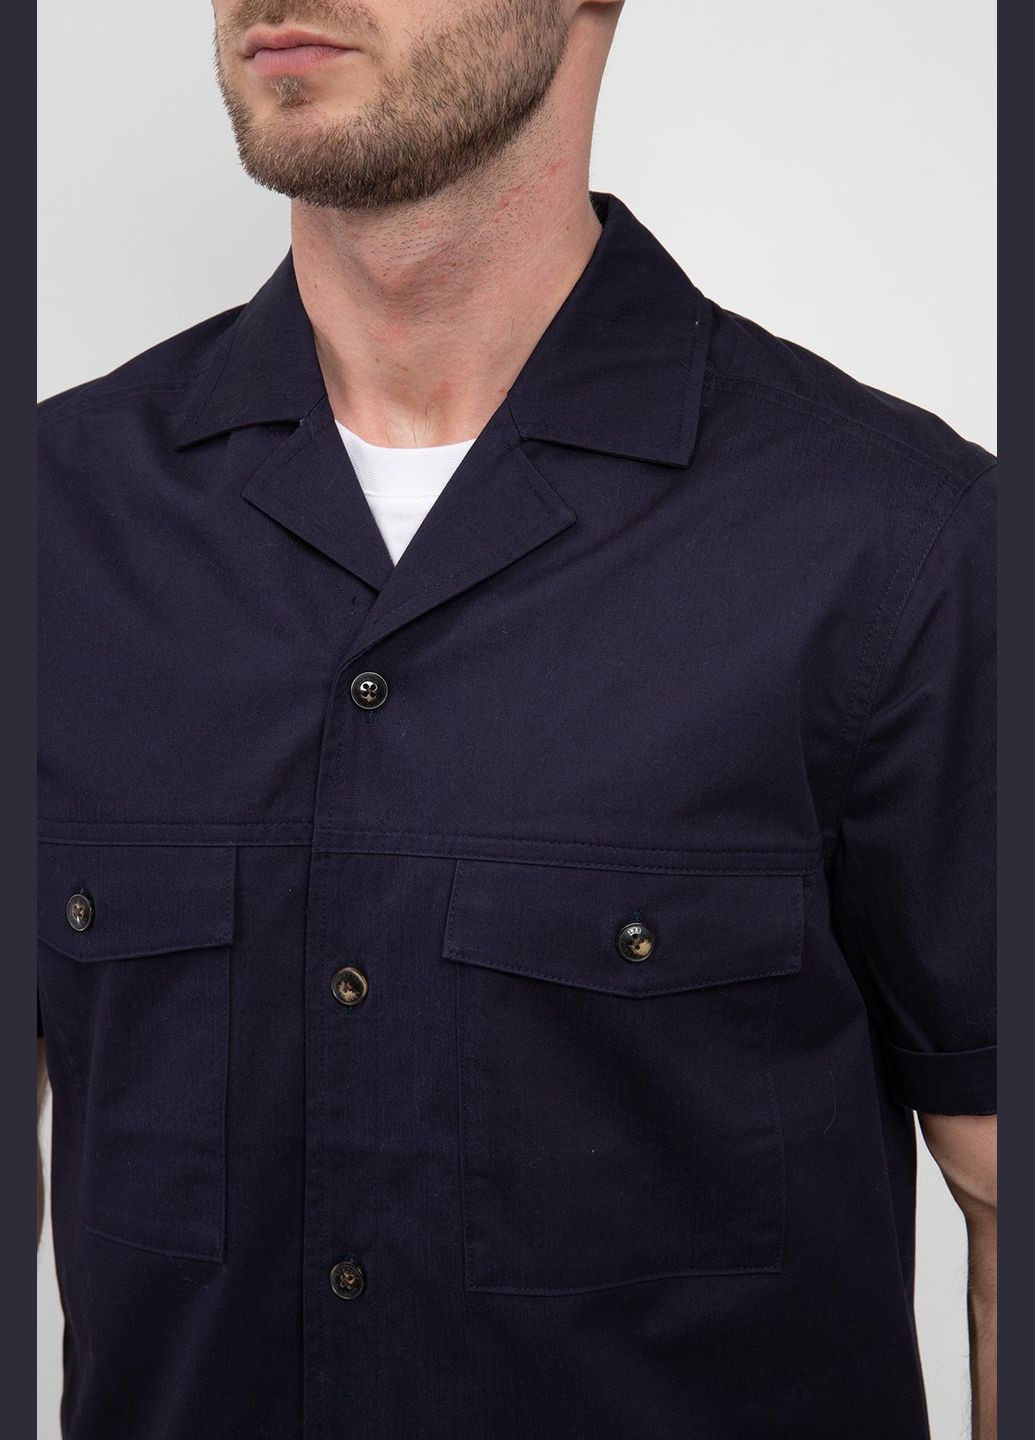 Темно-синяя кэжуал рубашка Les Deux